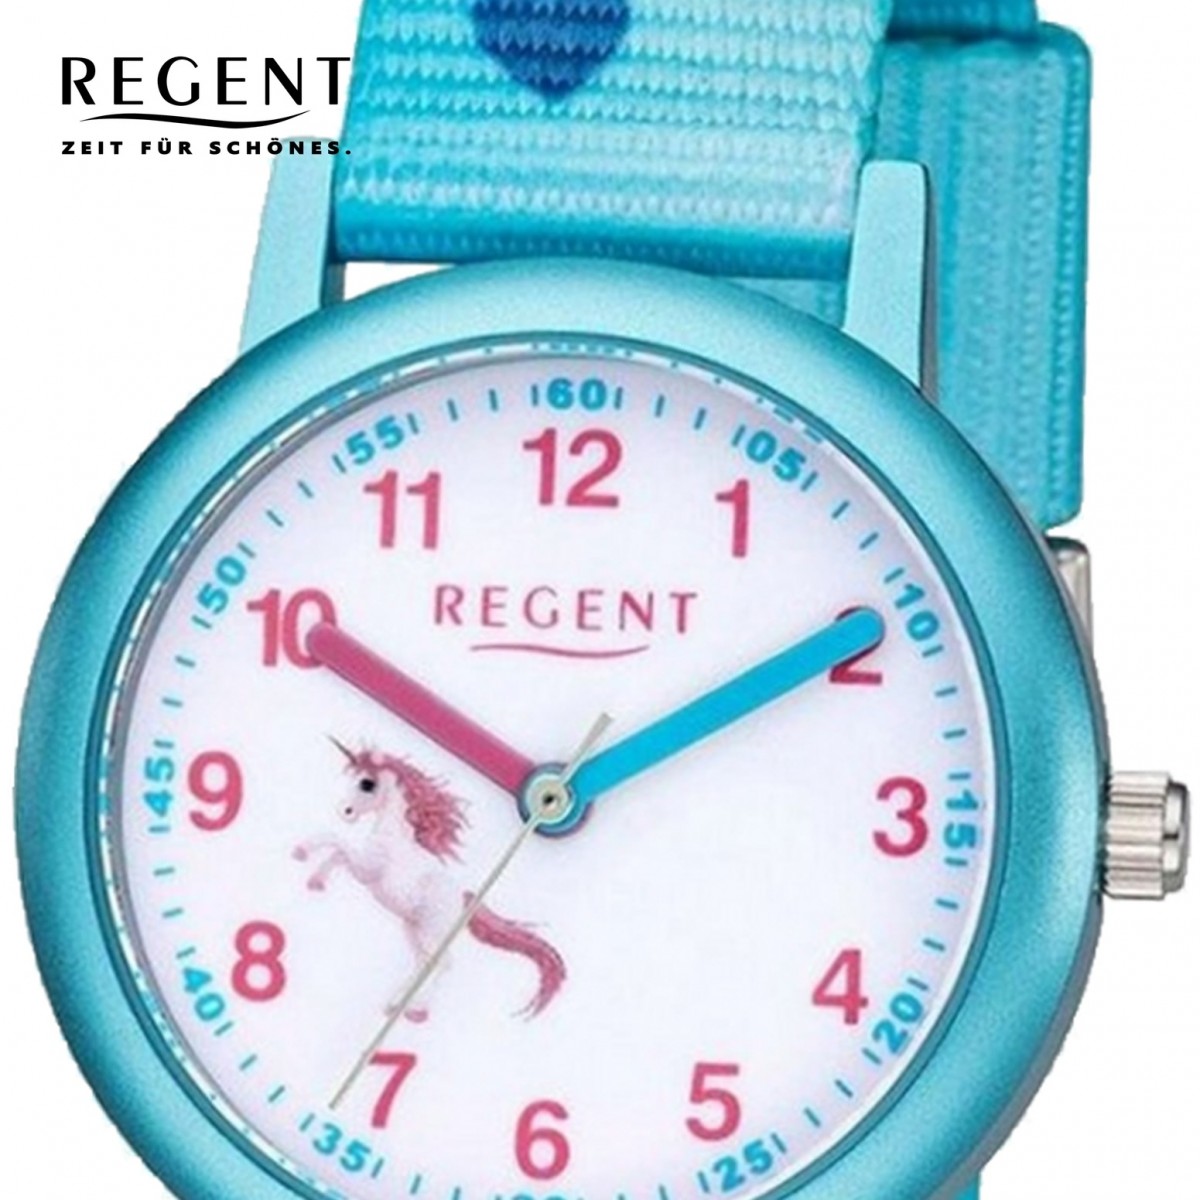 Analog Quarz-Uhr Armbanduhr Regent blau F-1208 URF1208 Textil Kinder